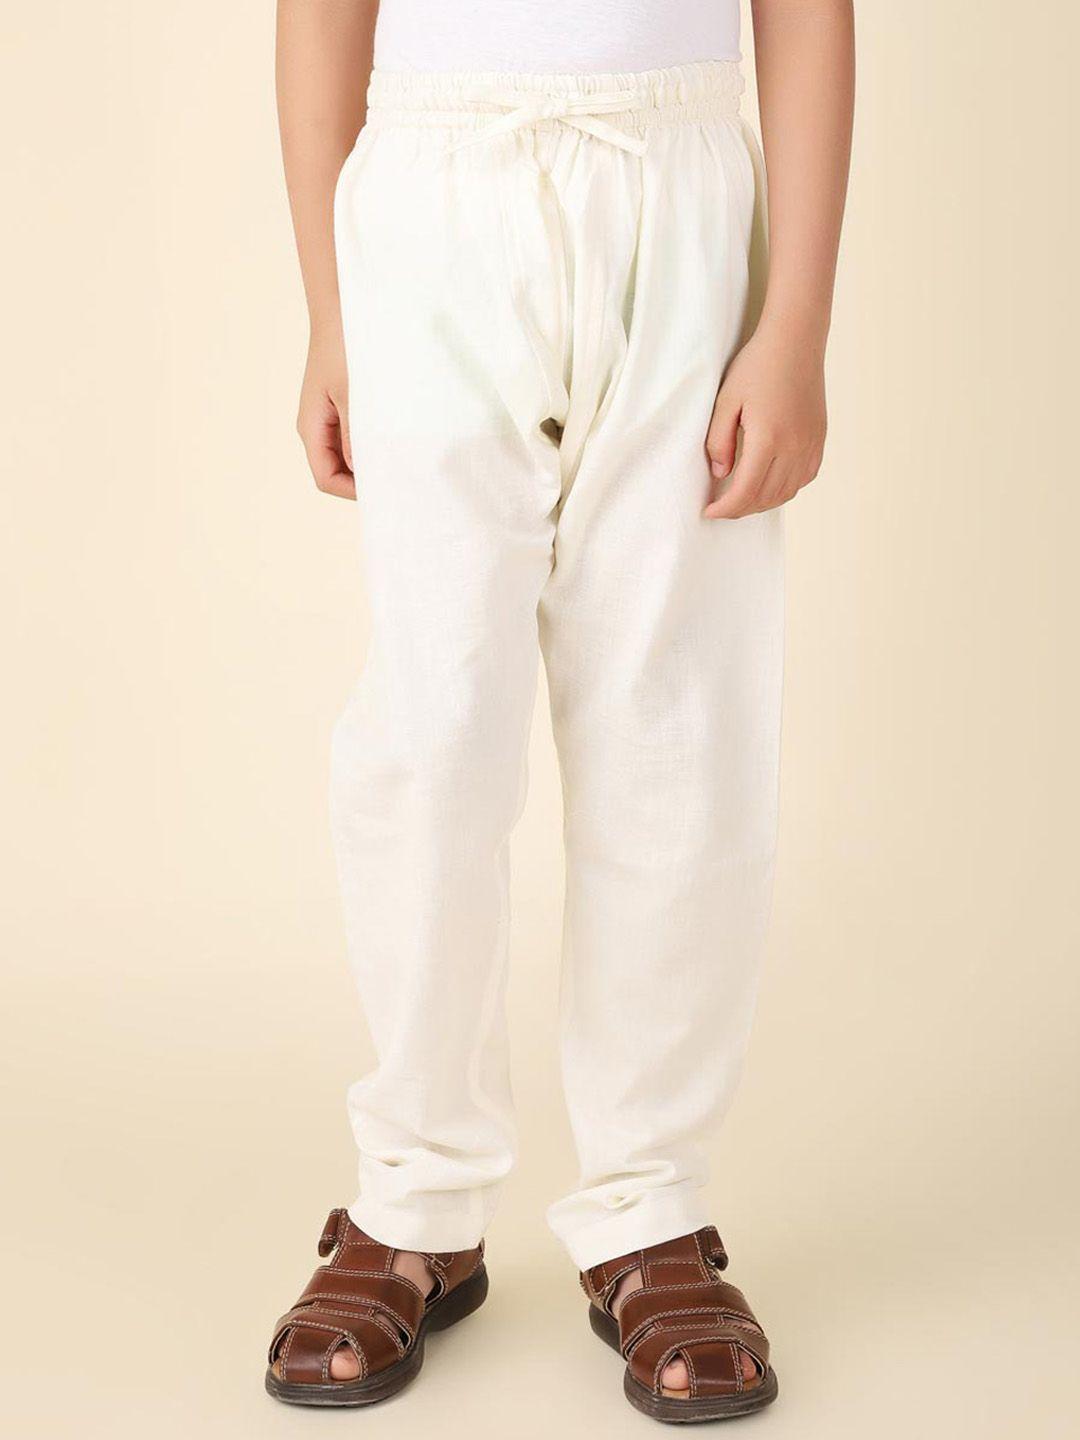 fabindia-boys-mid-rise-cotton-pyjamas